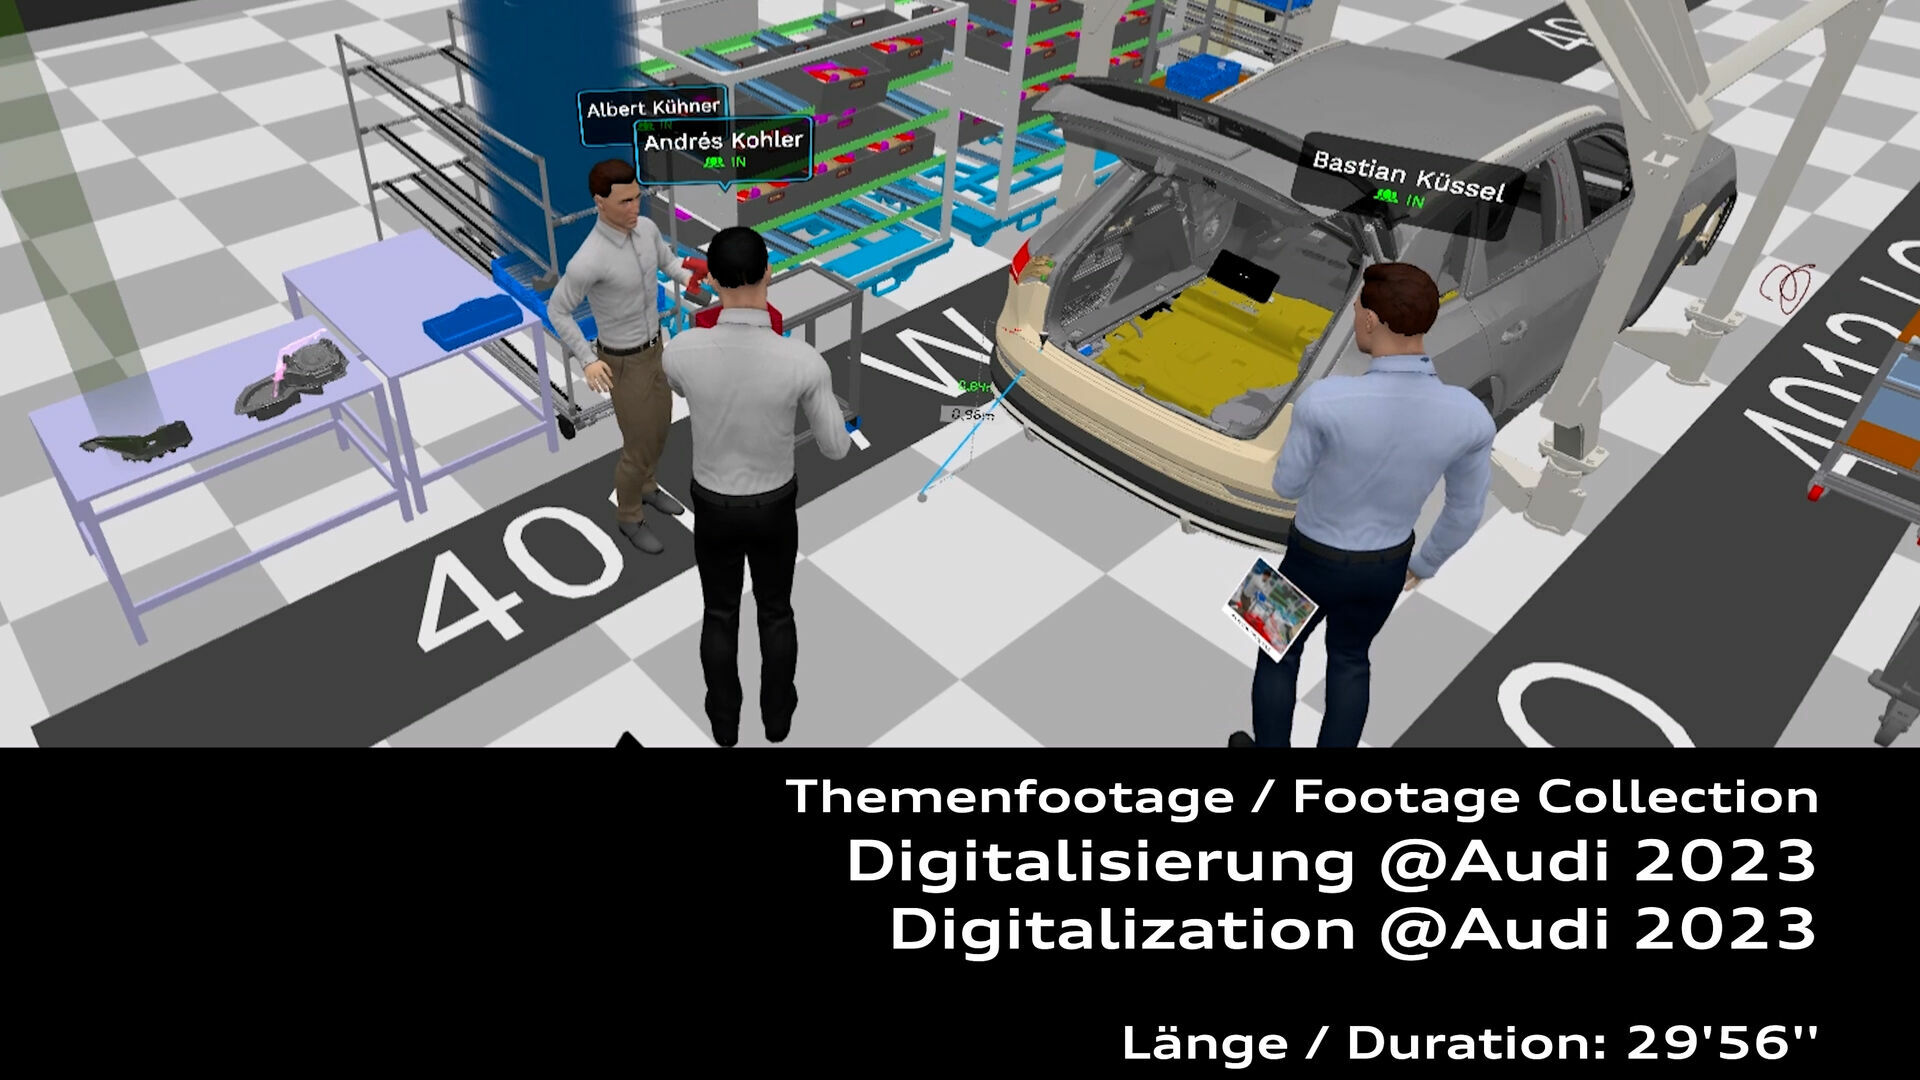 Footage: Digitalization @Audi 2023